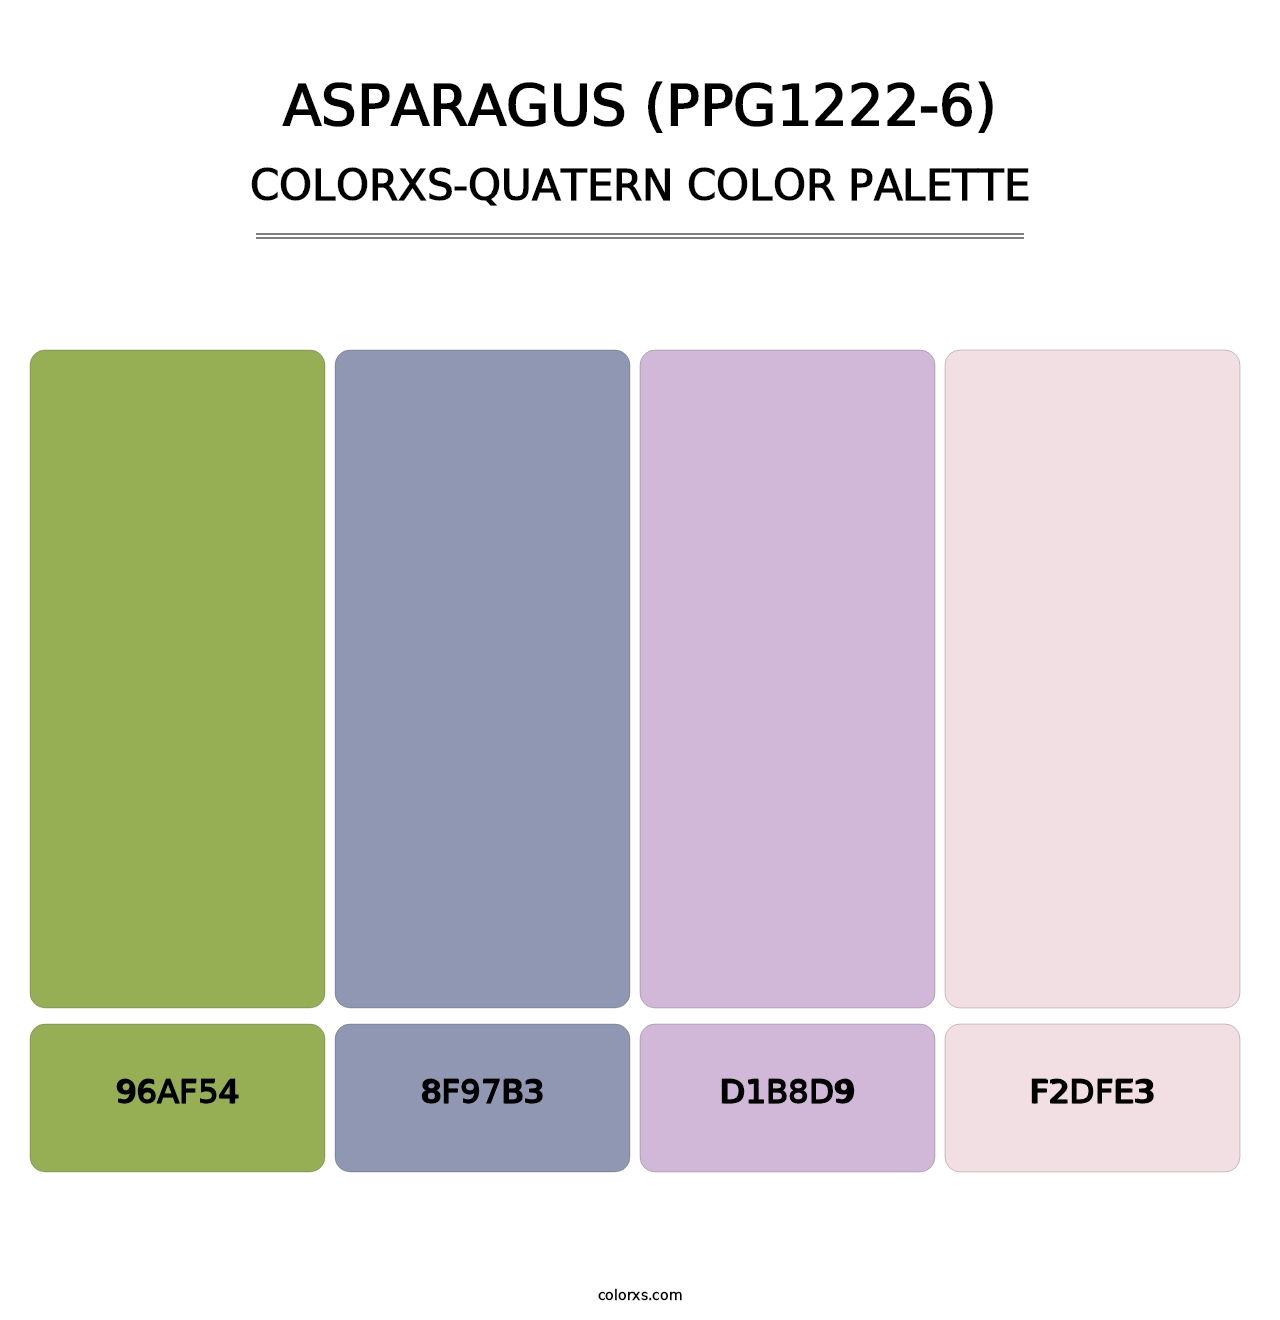 Asparagus (PPG1222-6) - Colorxs Quatern Palette